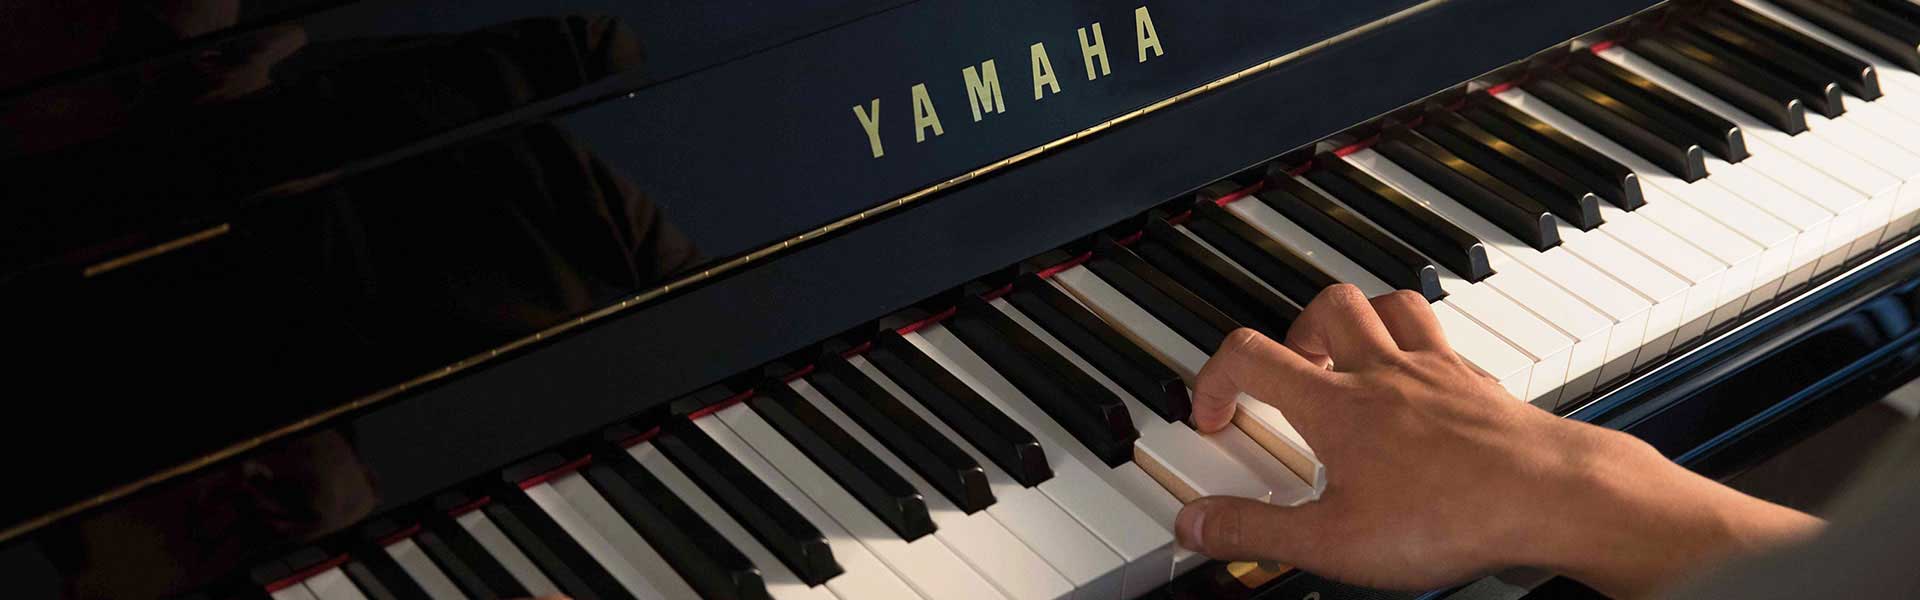 Yamaha Pianos at Riverton Piano Company - Yamaha Piano Dealer Phoenix